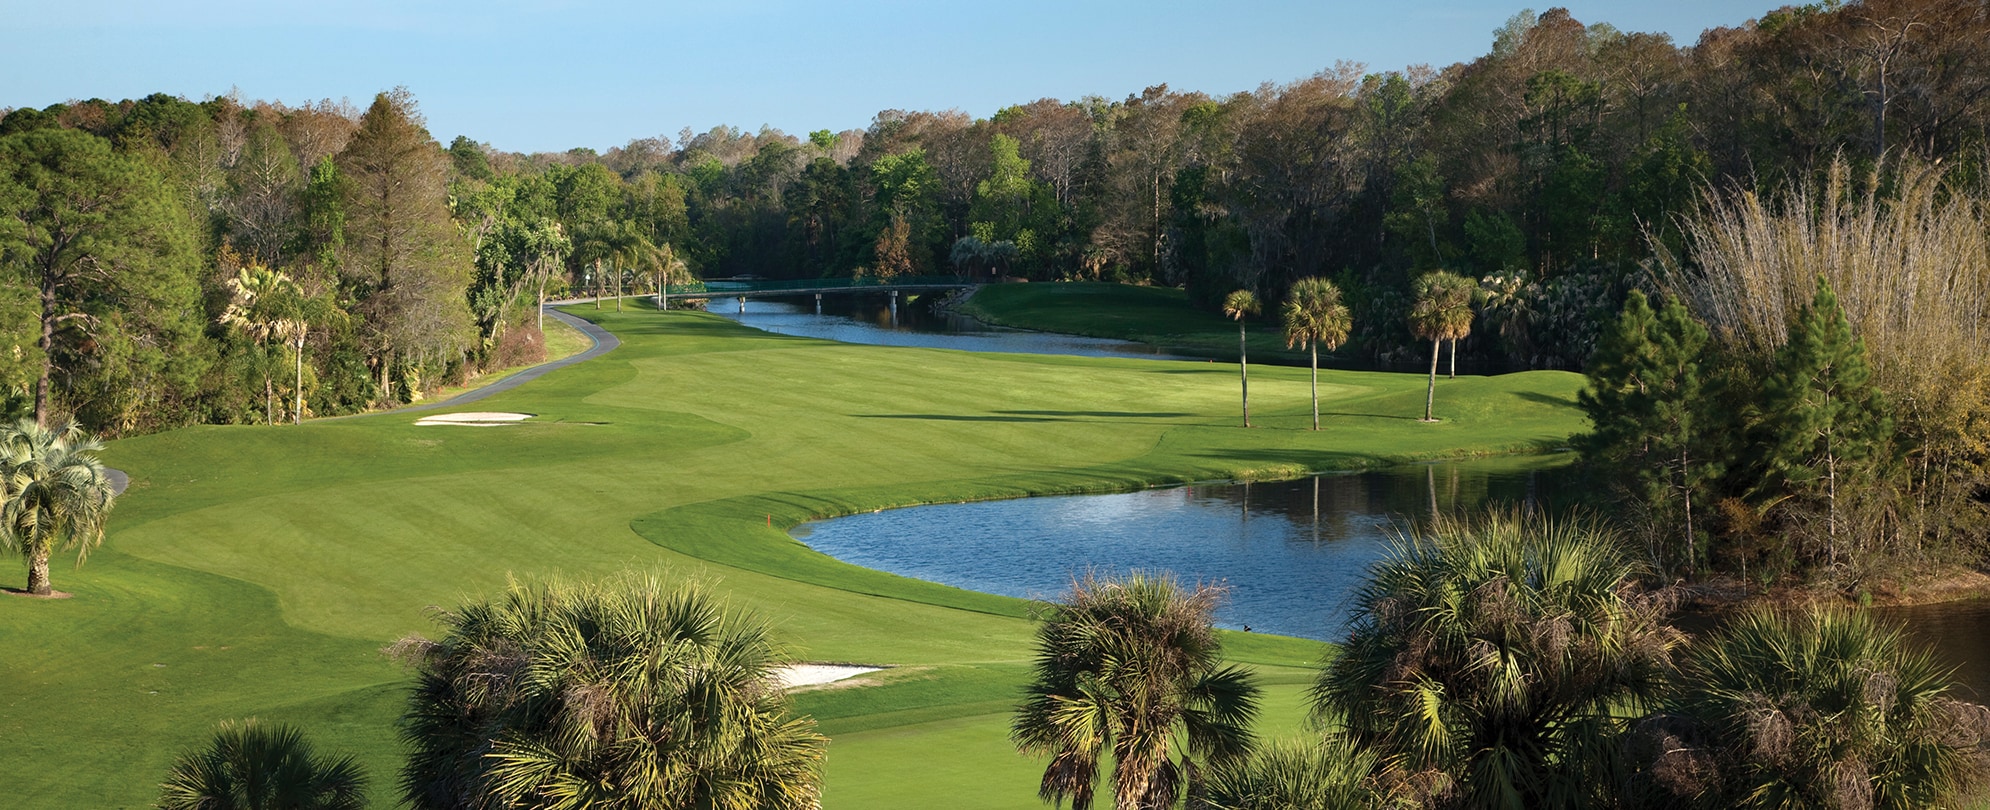 A golf course in Orlando, Florida.